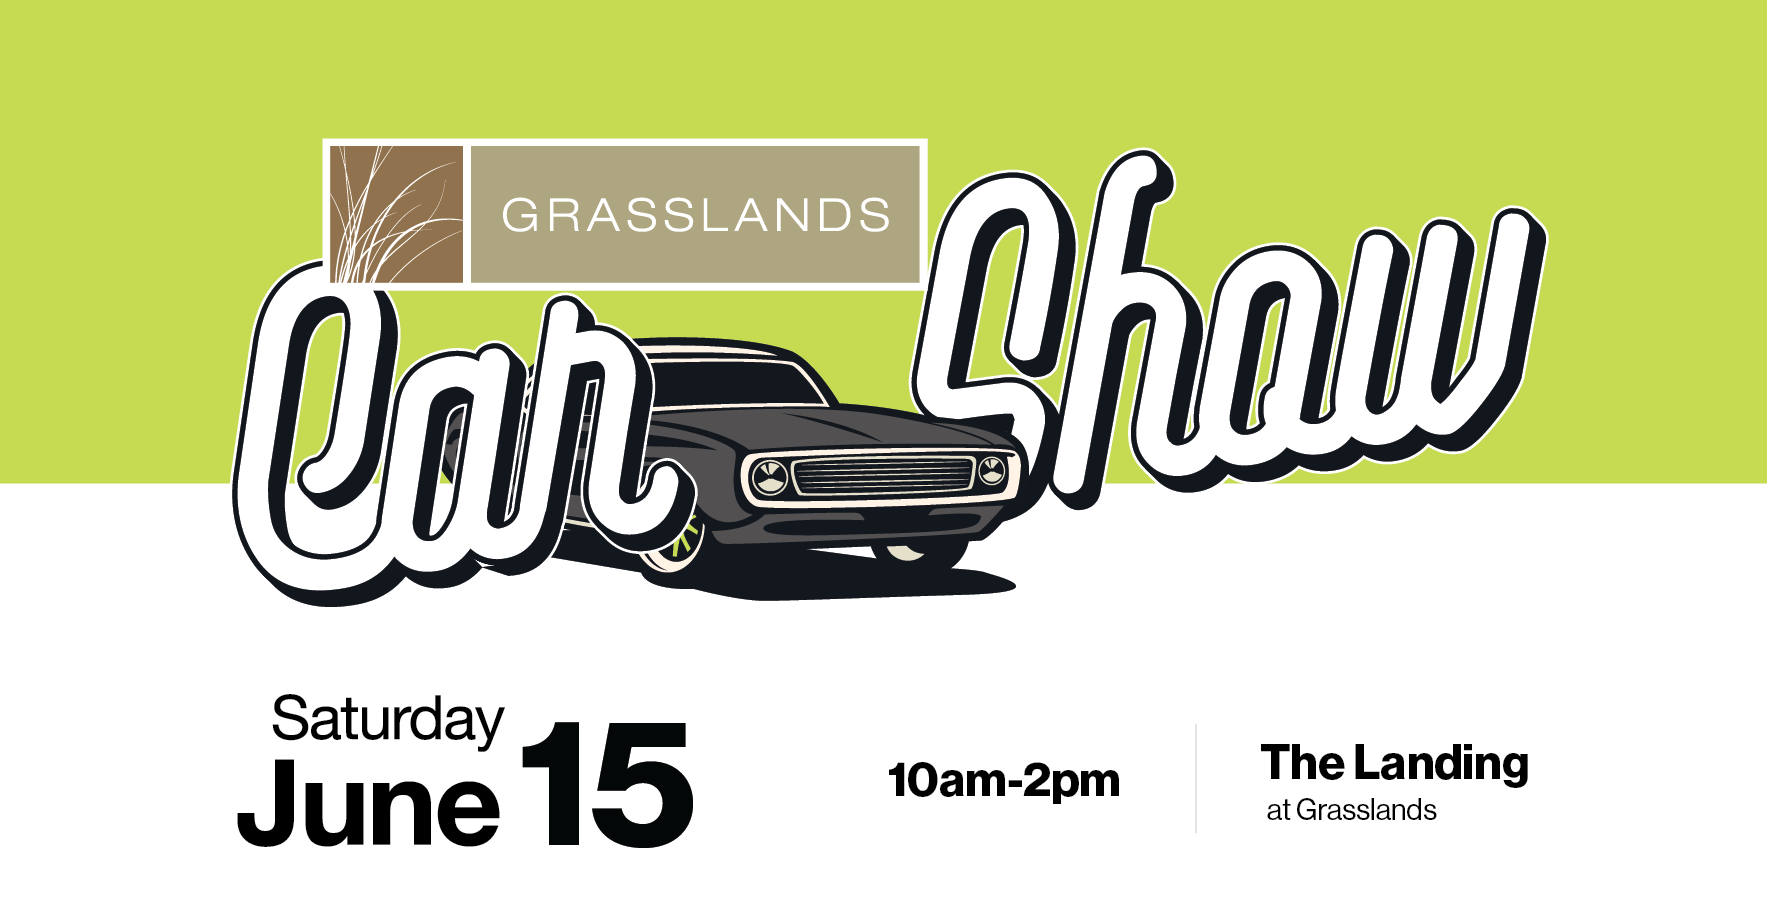 Grasslands Car Show